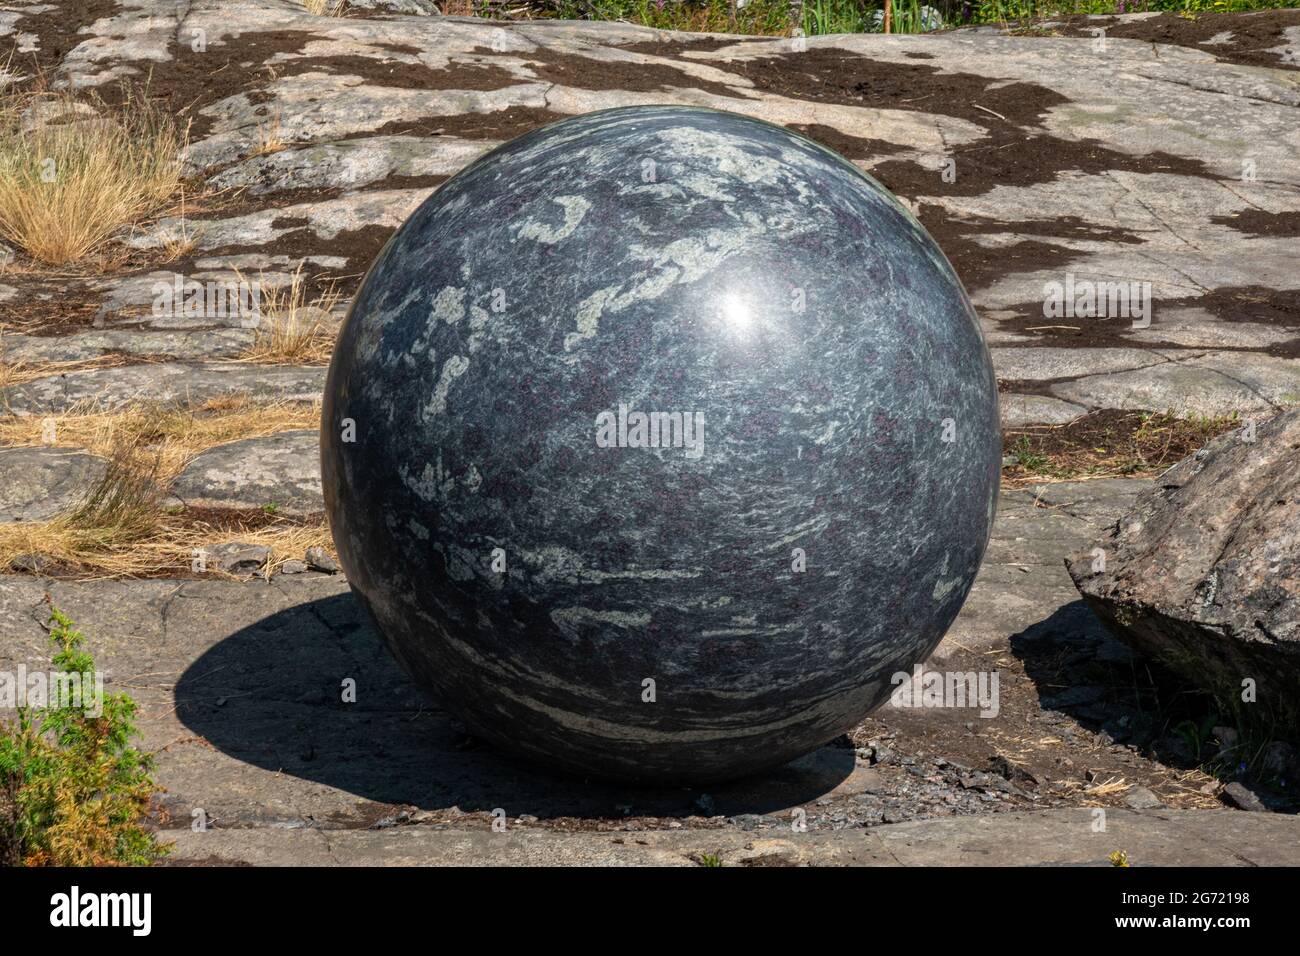 Grand globe en pierre, faisant partie de la sculpture Pars Pro Toto par Alica Kwade, lors de la biennale d'art 2021 d'Helsinki, sur l'île de Vallisaari, en Finlande Banque D'Images